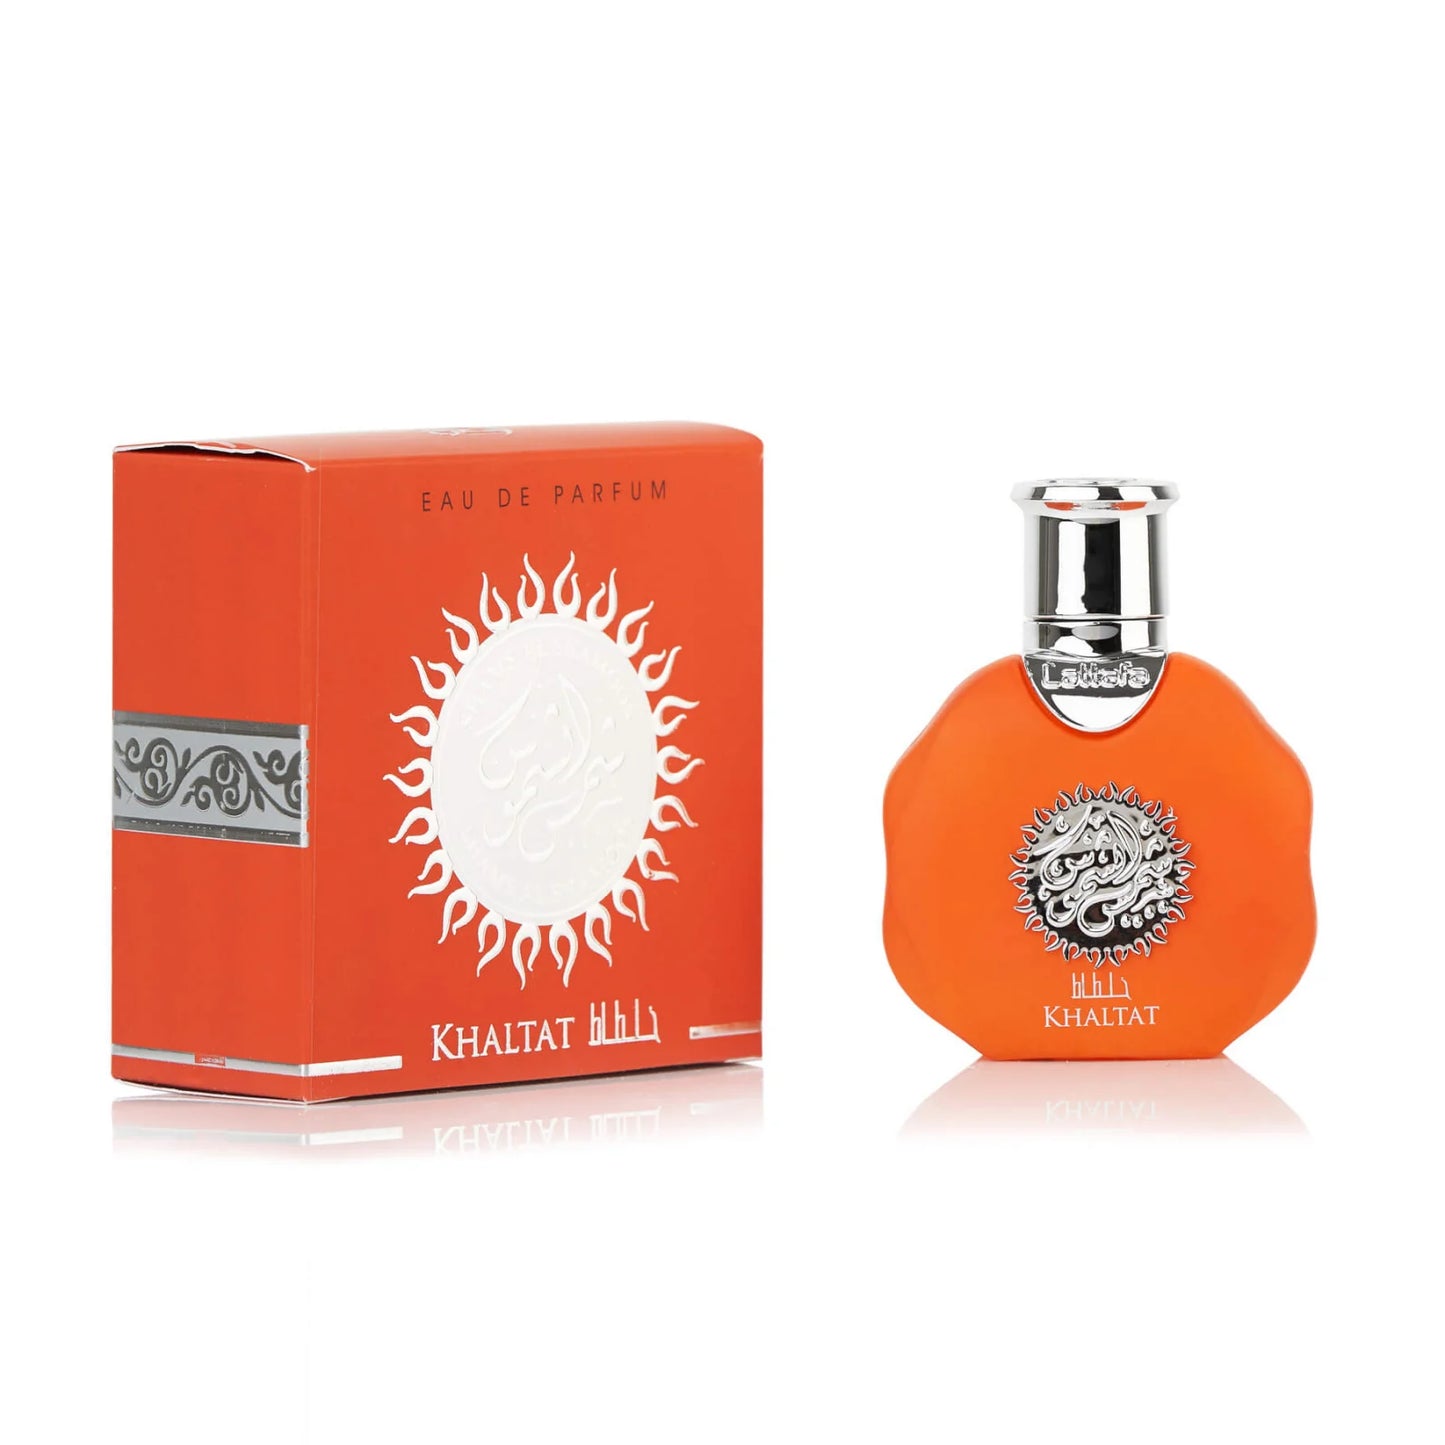 Parfum arabesc Lattafa Shams Al Shamoos Khaltat, apa de parfum 35 ml, femei